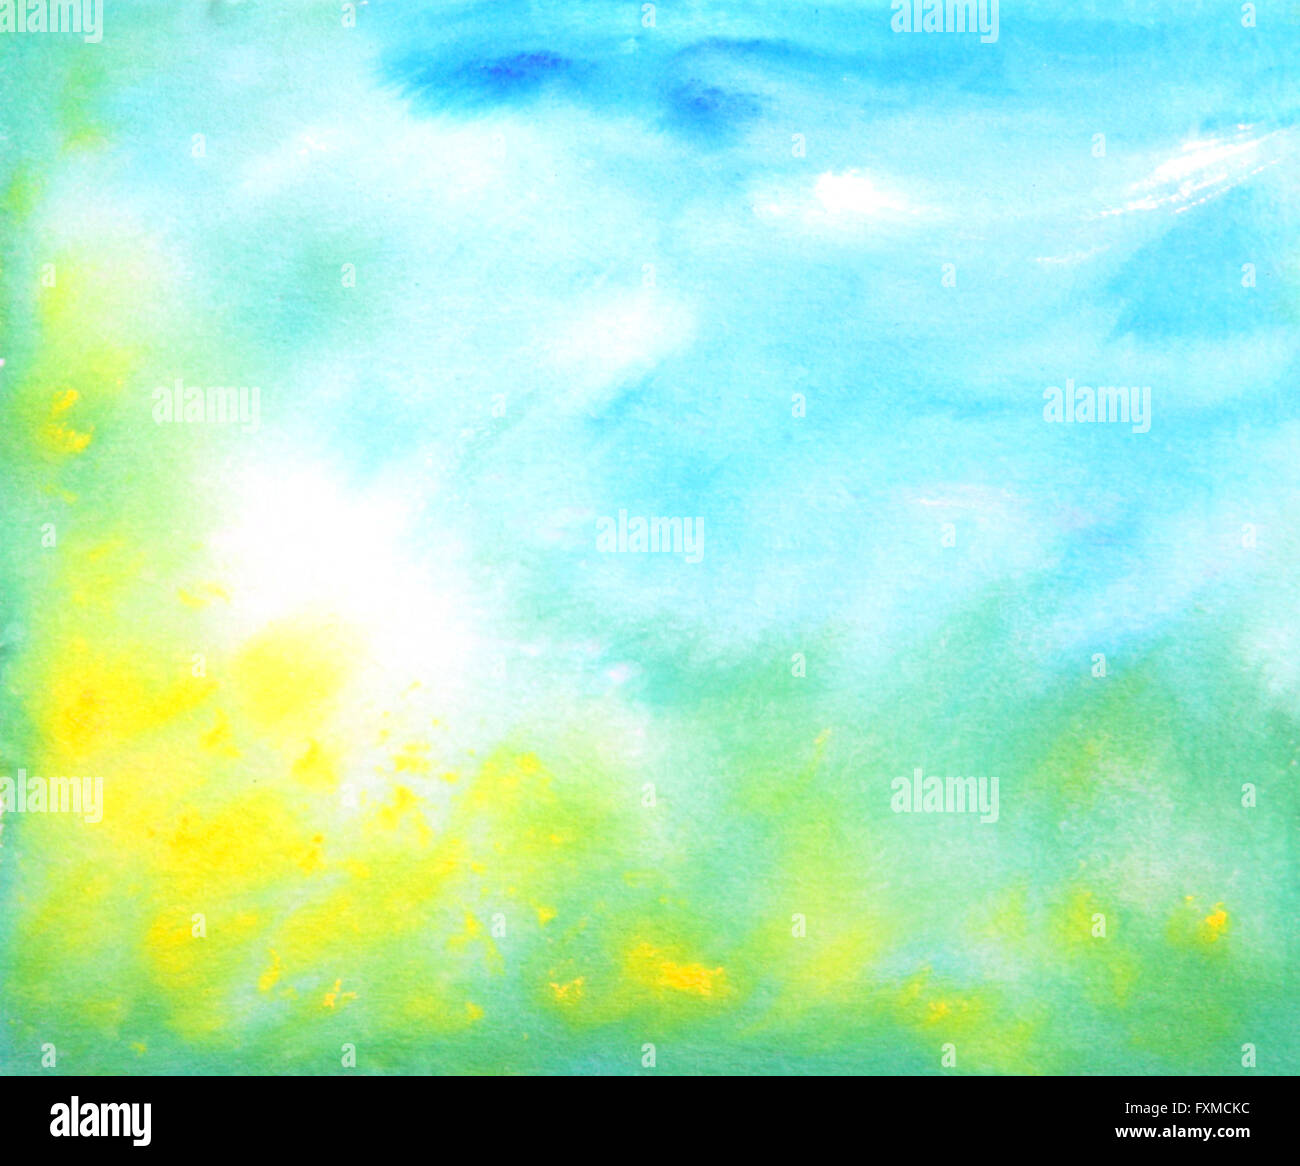 Abstract disegnati a mano sfondo acquerelli: estate paesaggio con cielo blu, verde erba e fiori di colore giallo. Ottimo per le textures, vintage design e carta da parati di lusso Foto Stock